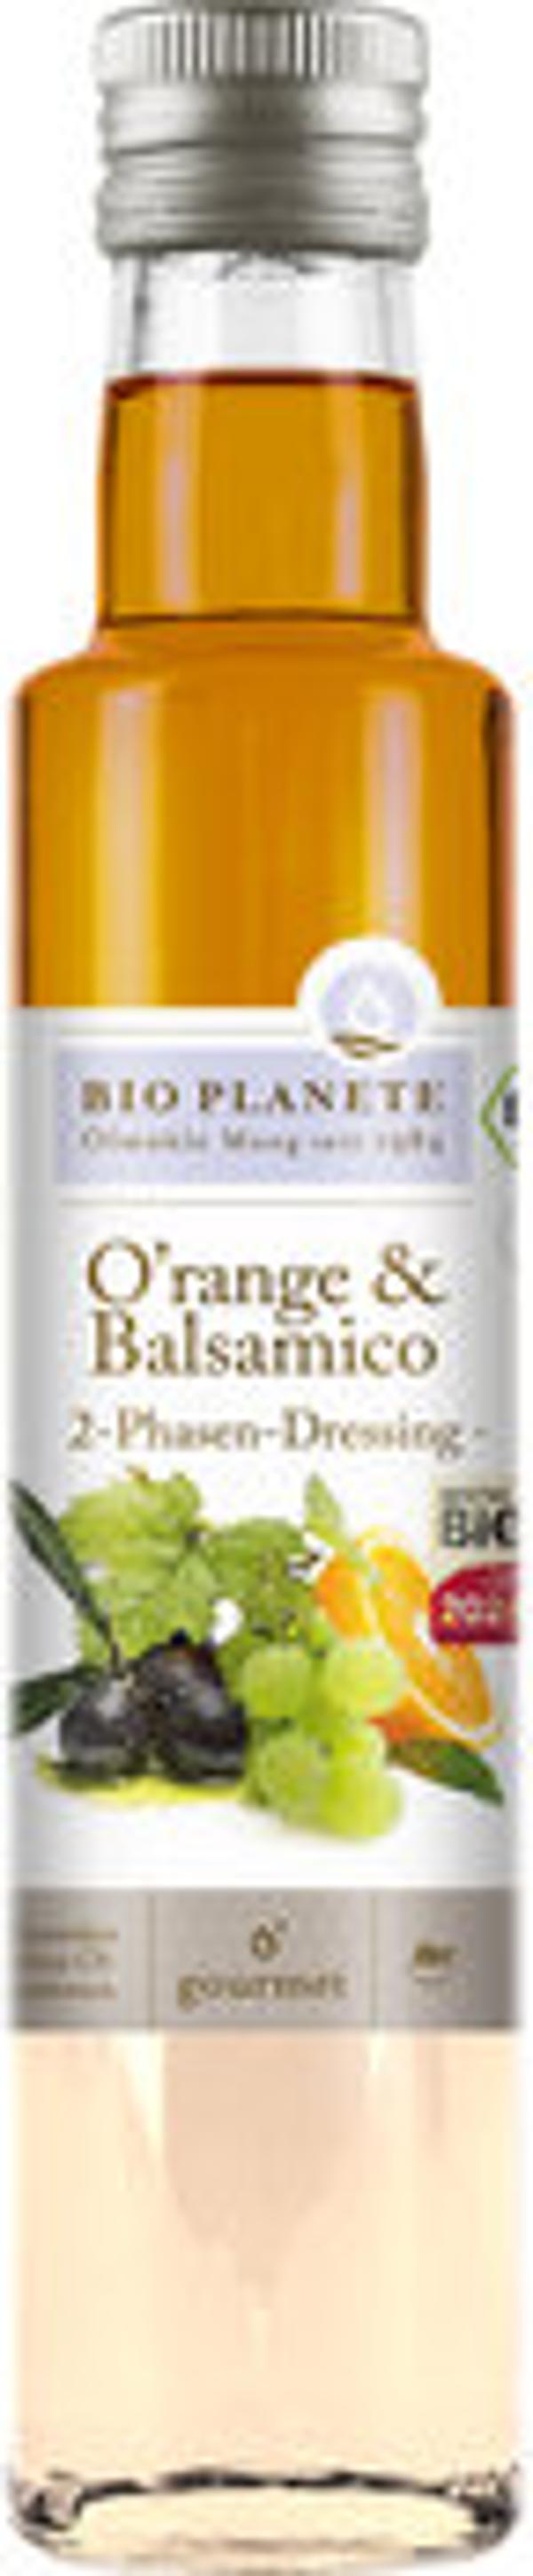 Produktfoto zu Bio Planète O'range und Balsamico Essig 250ml